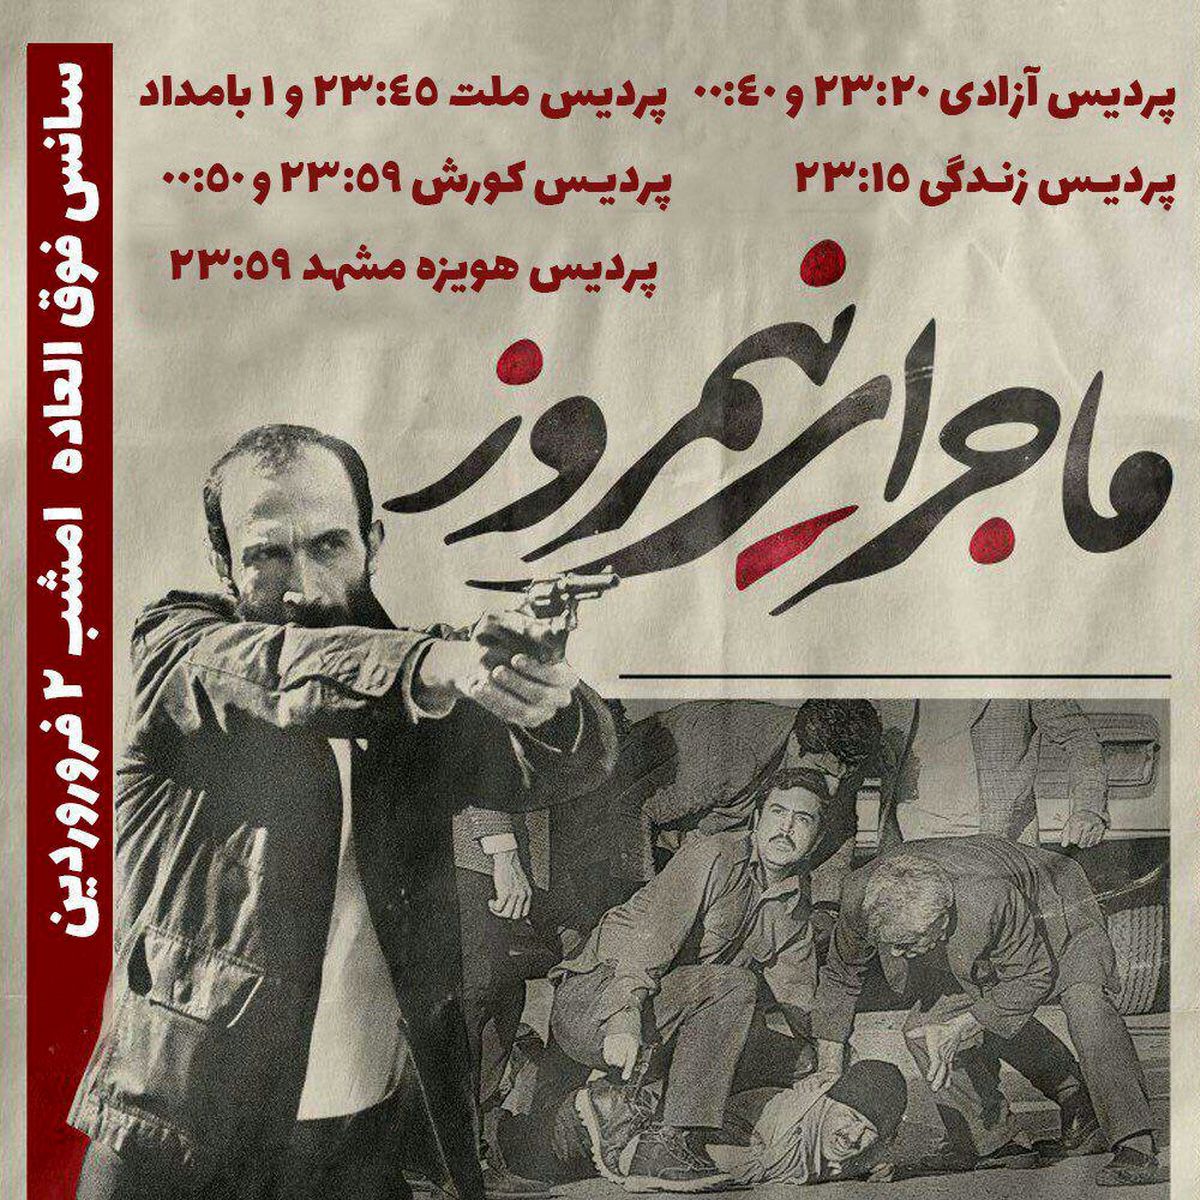 فروش بیش از ٢٠٠ میلیون در دو روز بهار برای "ماجرای نیمروز"/ ٨ سانس فوق العاده در تهران و شیراز